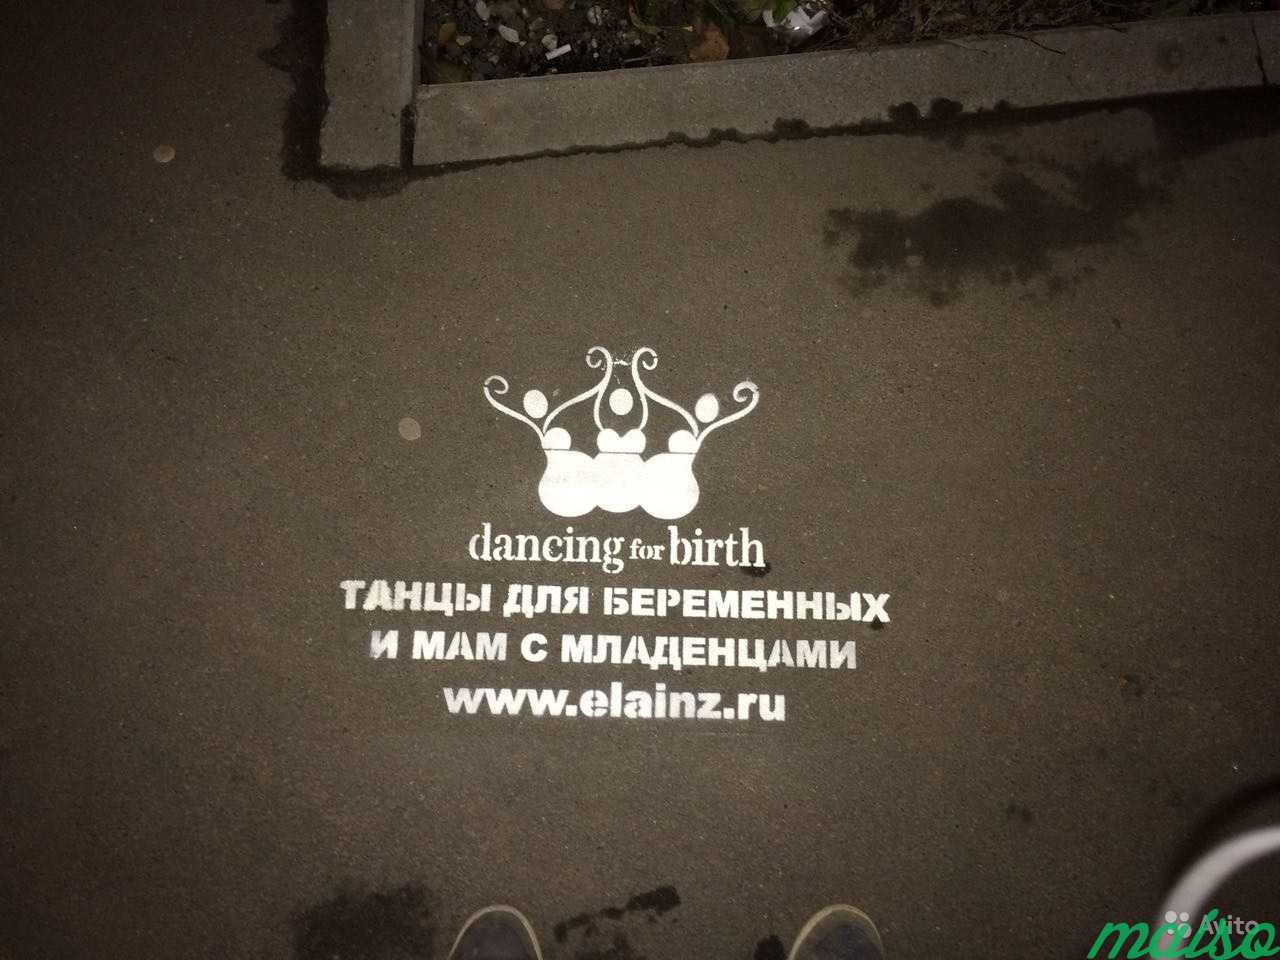 Реклама на асфальте в Москве. Фото 8